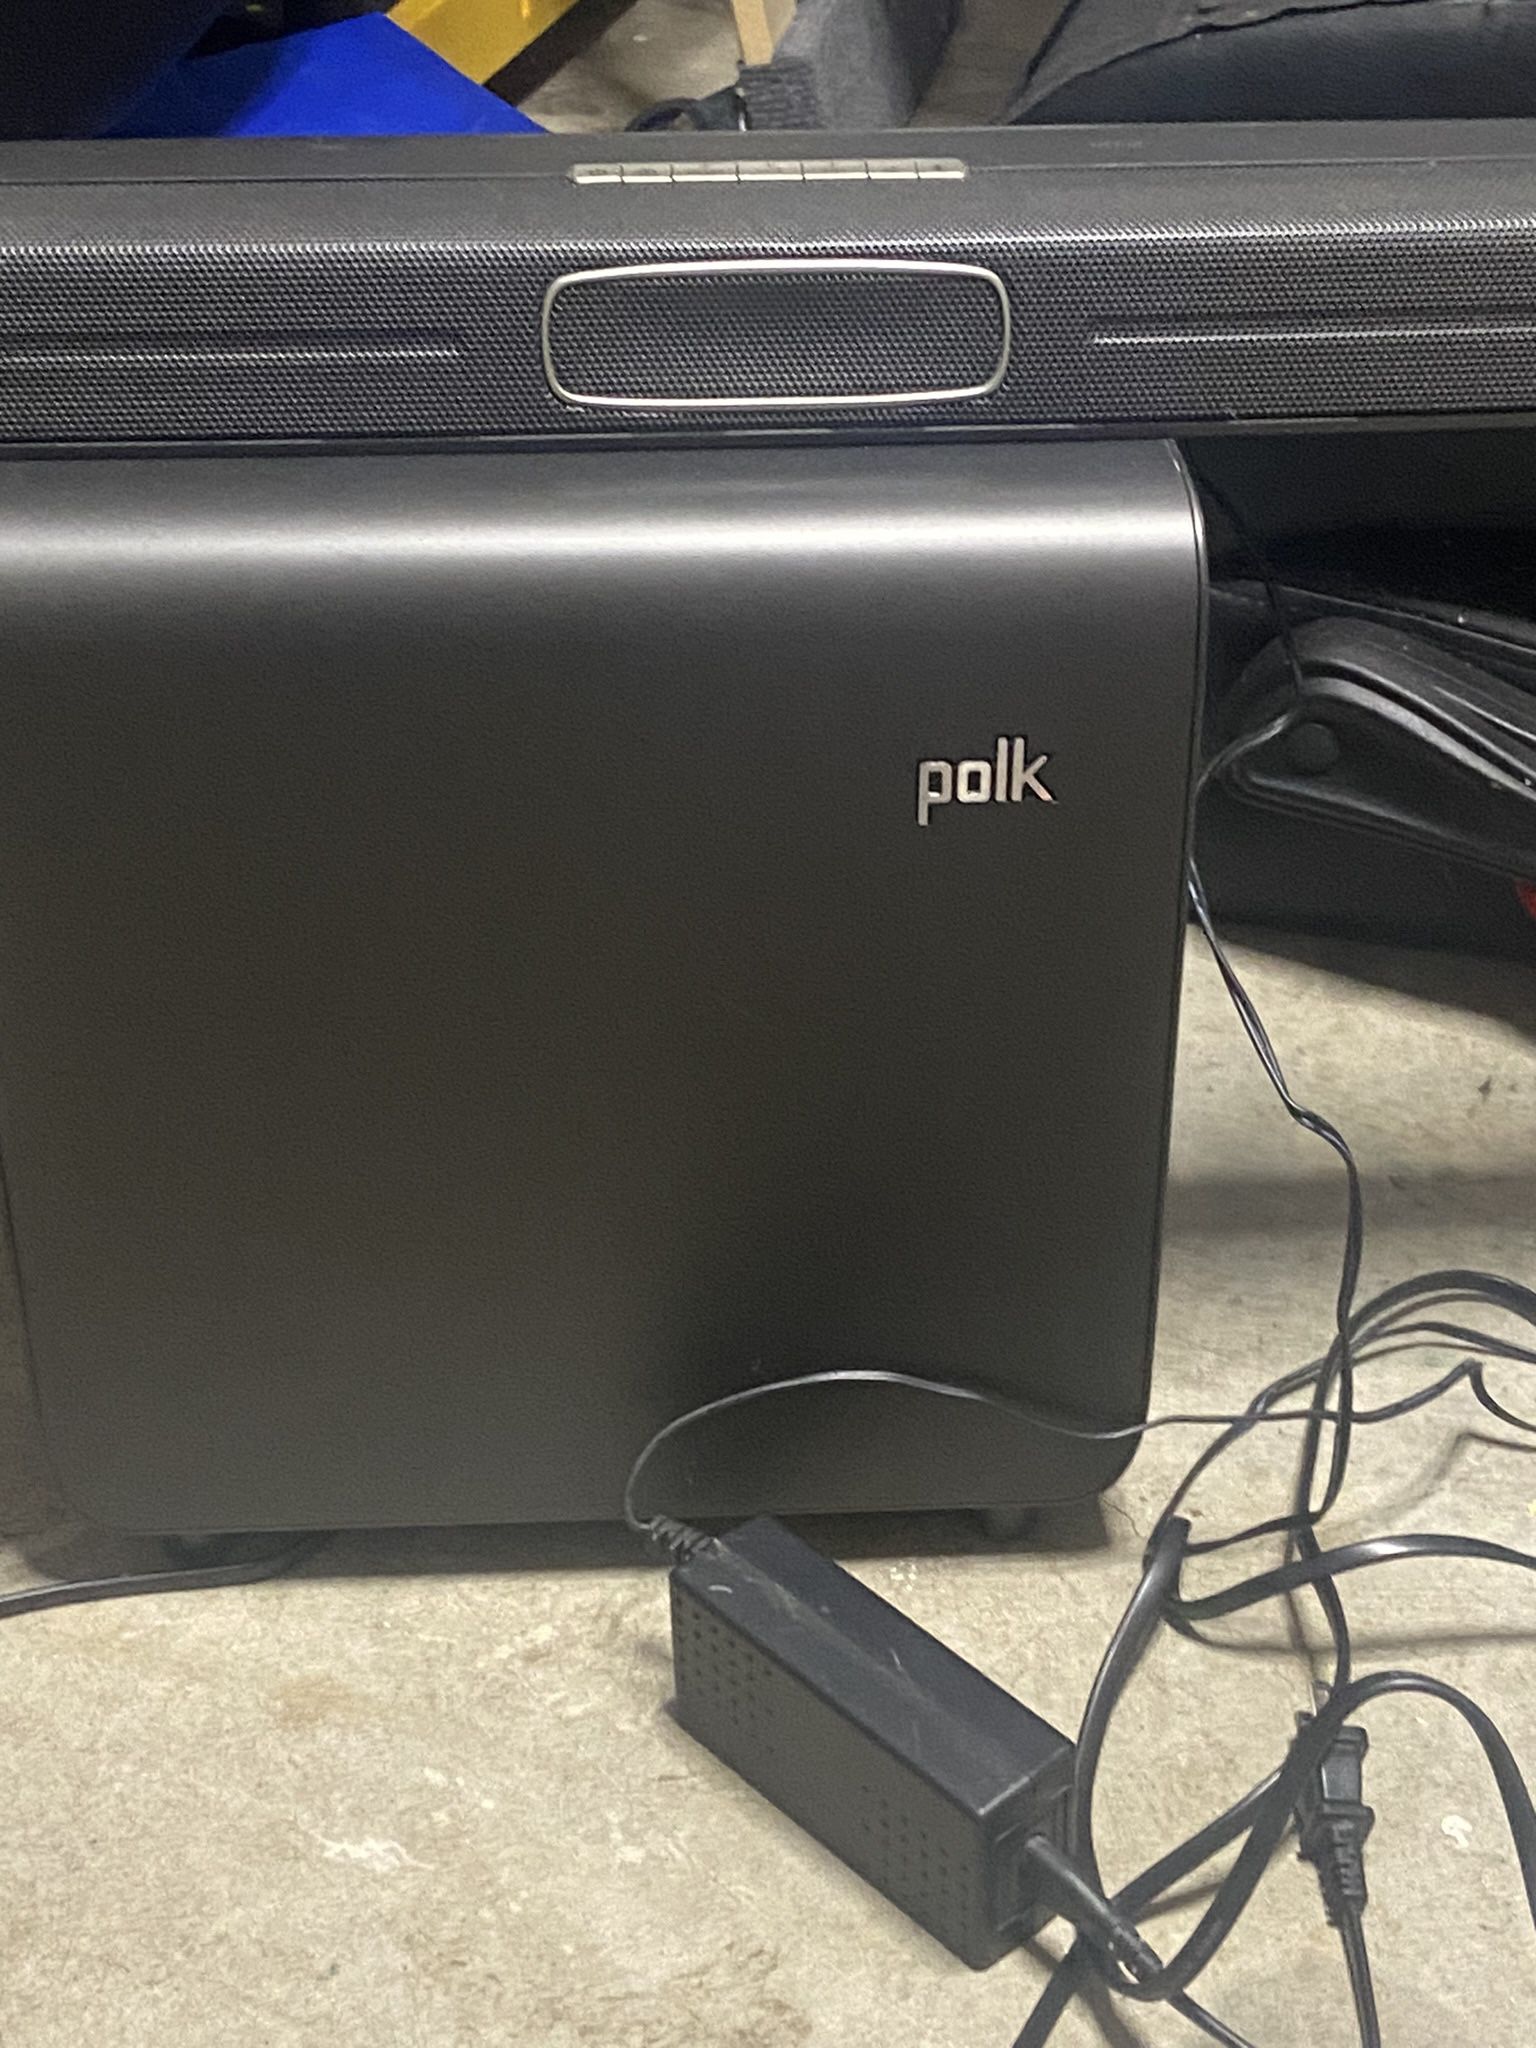 Polk Bluetooth Sound bar 